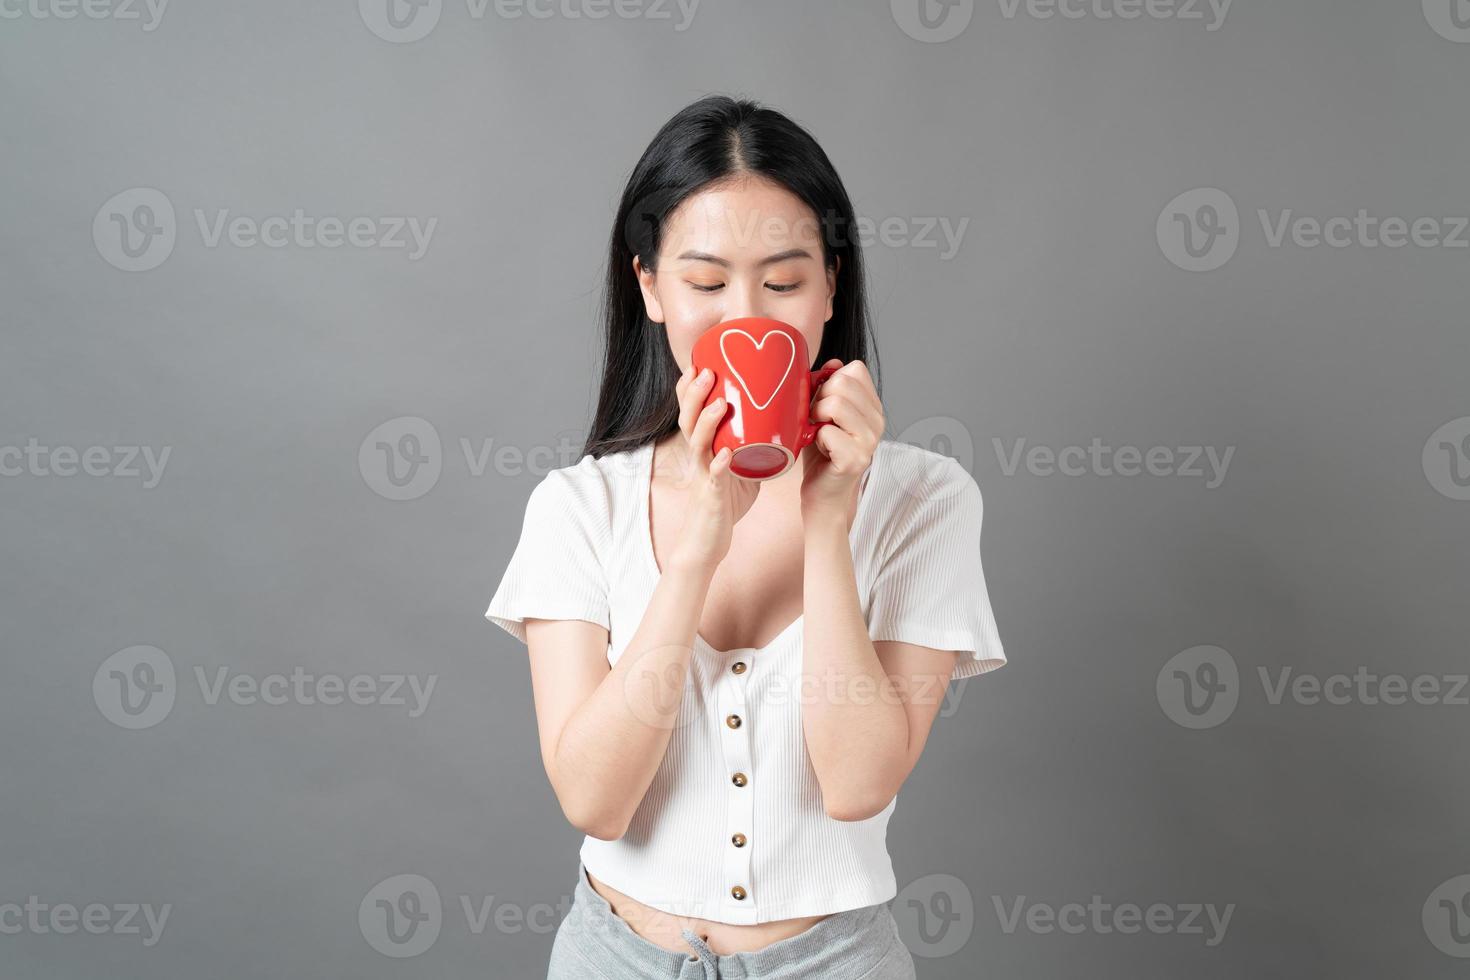 jeune femme asiatique avec un visage heureux et une main tenant une tasse de café photo